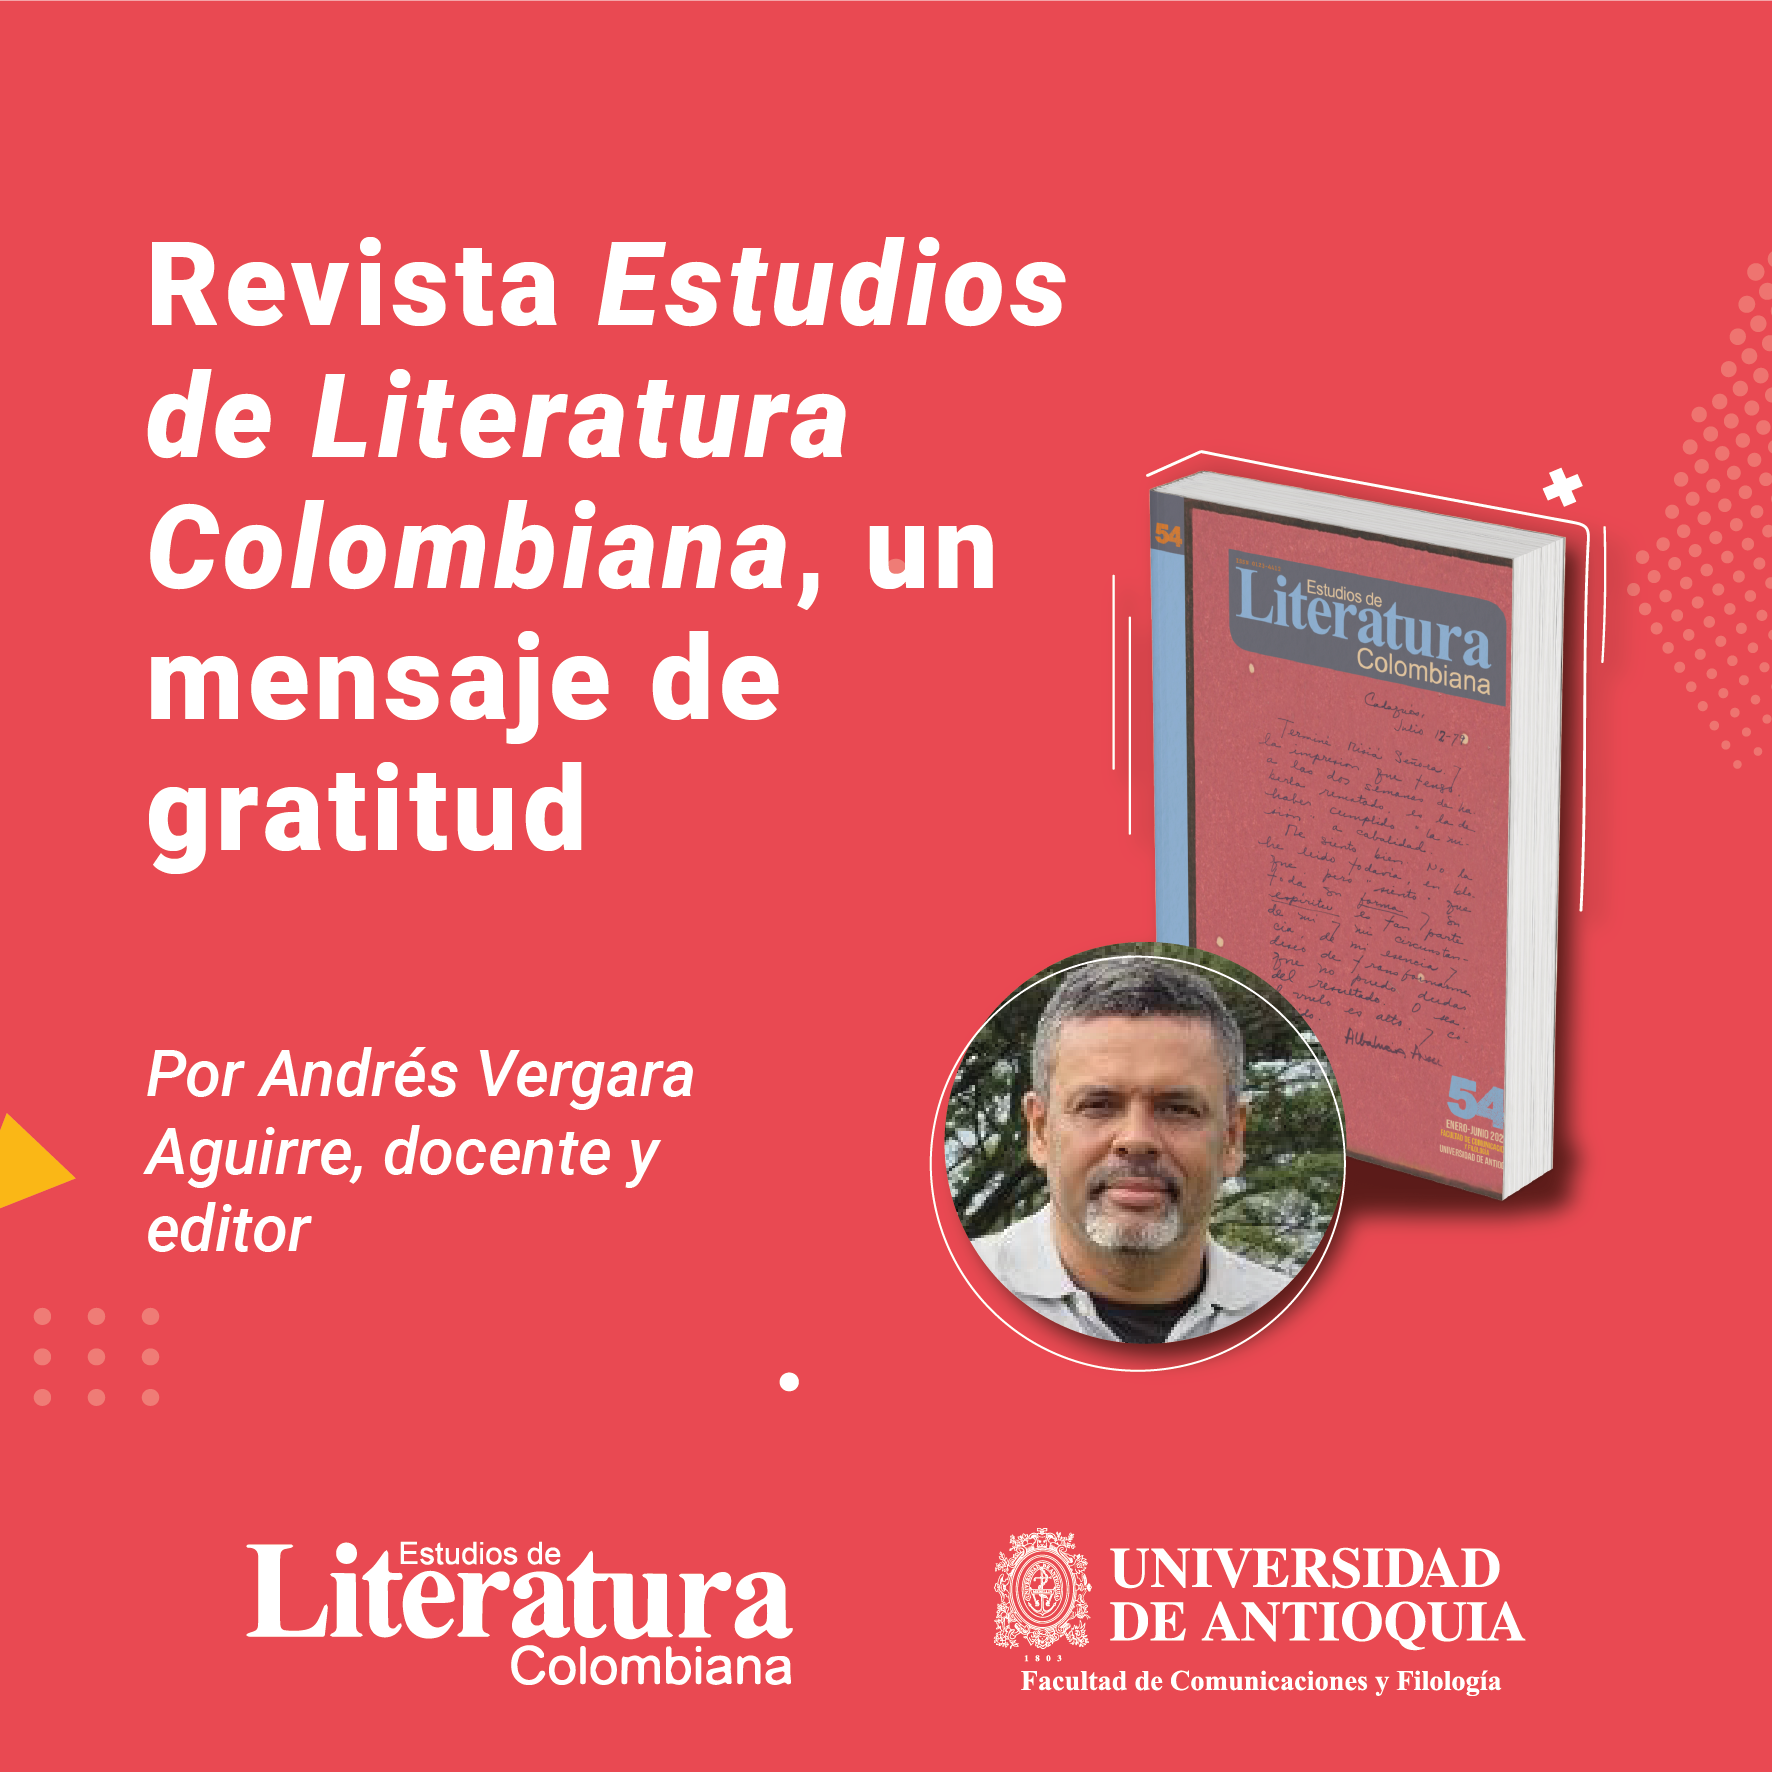 Imagen con el título de la nota, en fondo rojo, acompañada de una foto del profesor Andrés Vergara Aguirre y de la portada de la revista